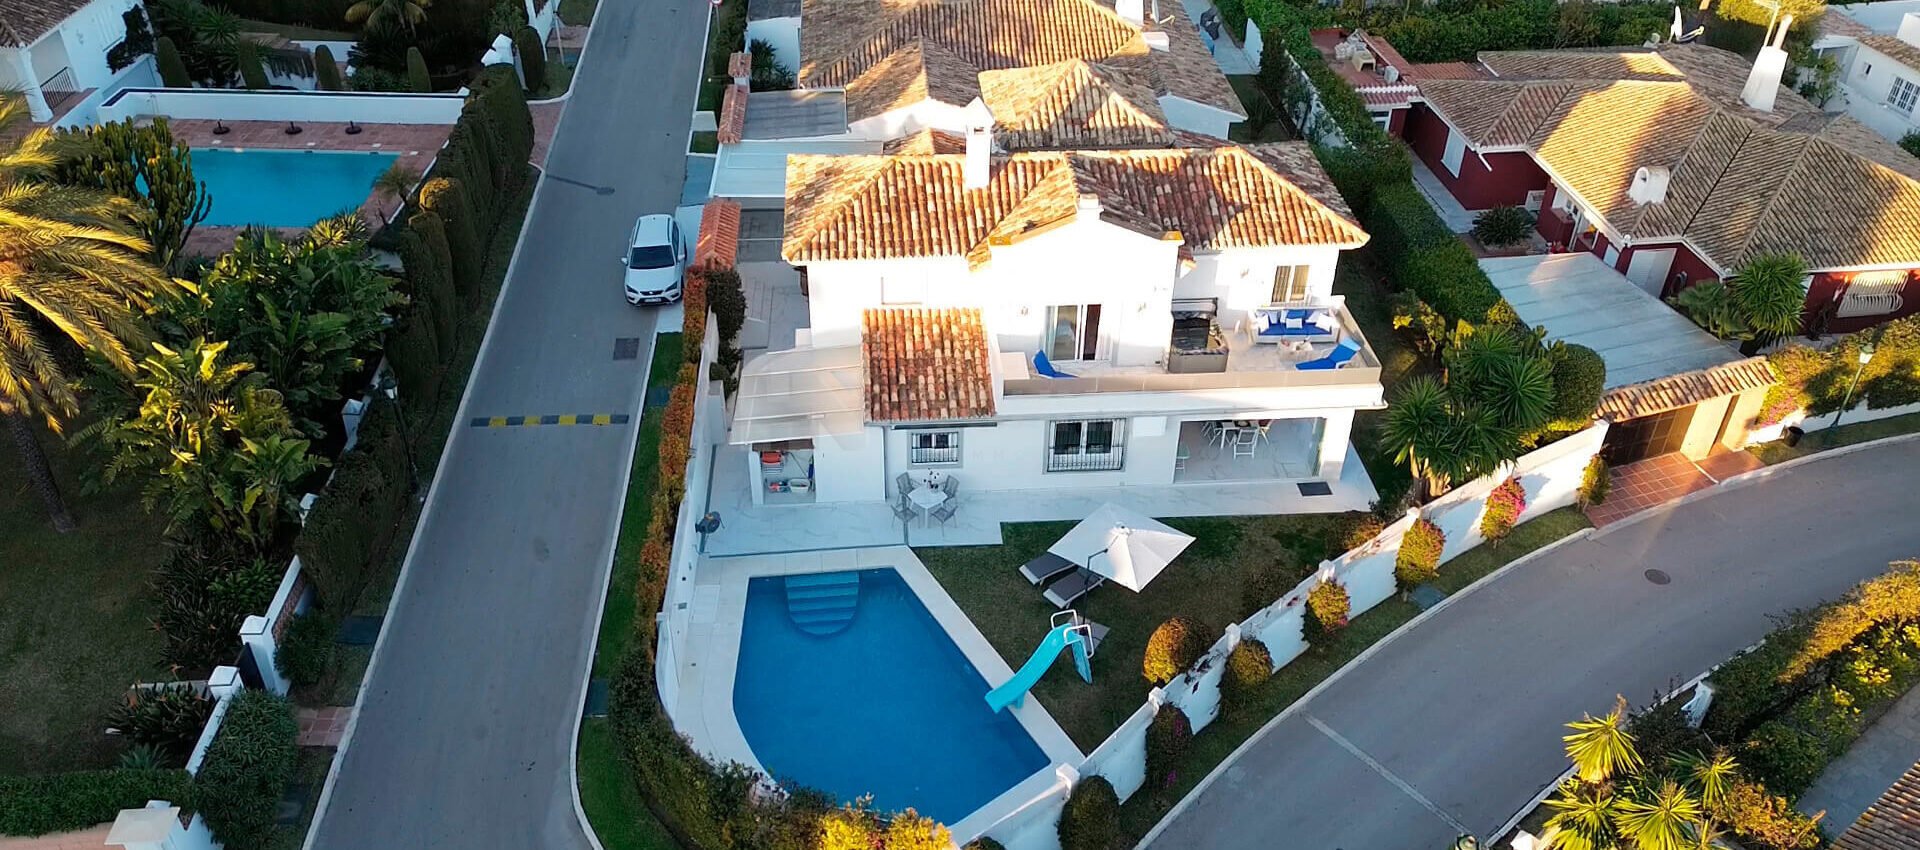 Villa in einer der privilegiertesten Gegenden von Marbella neben dem Strand